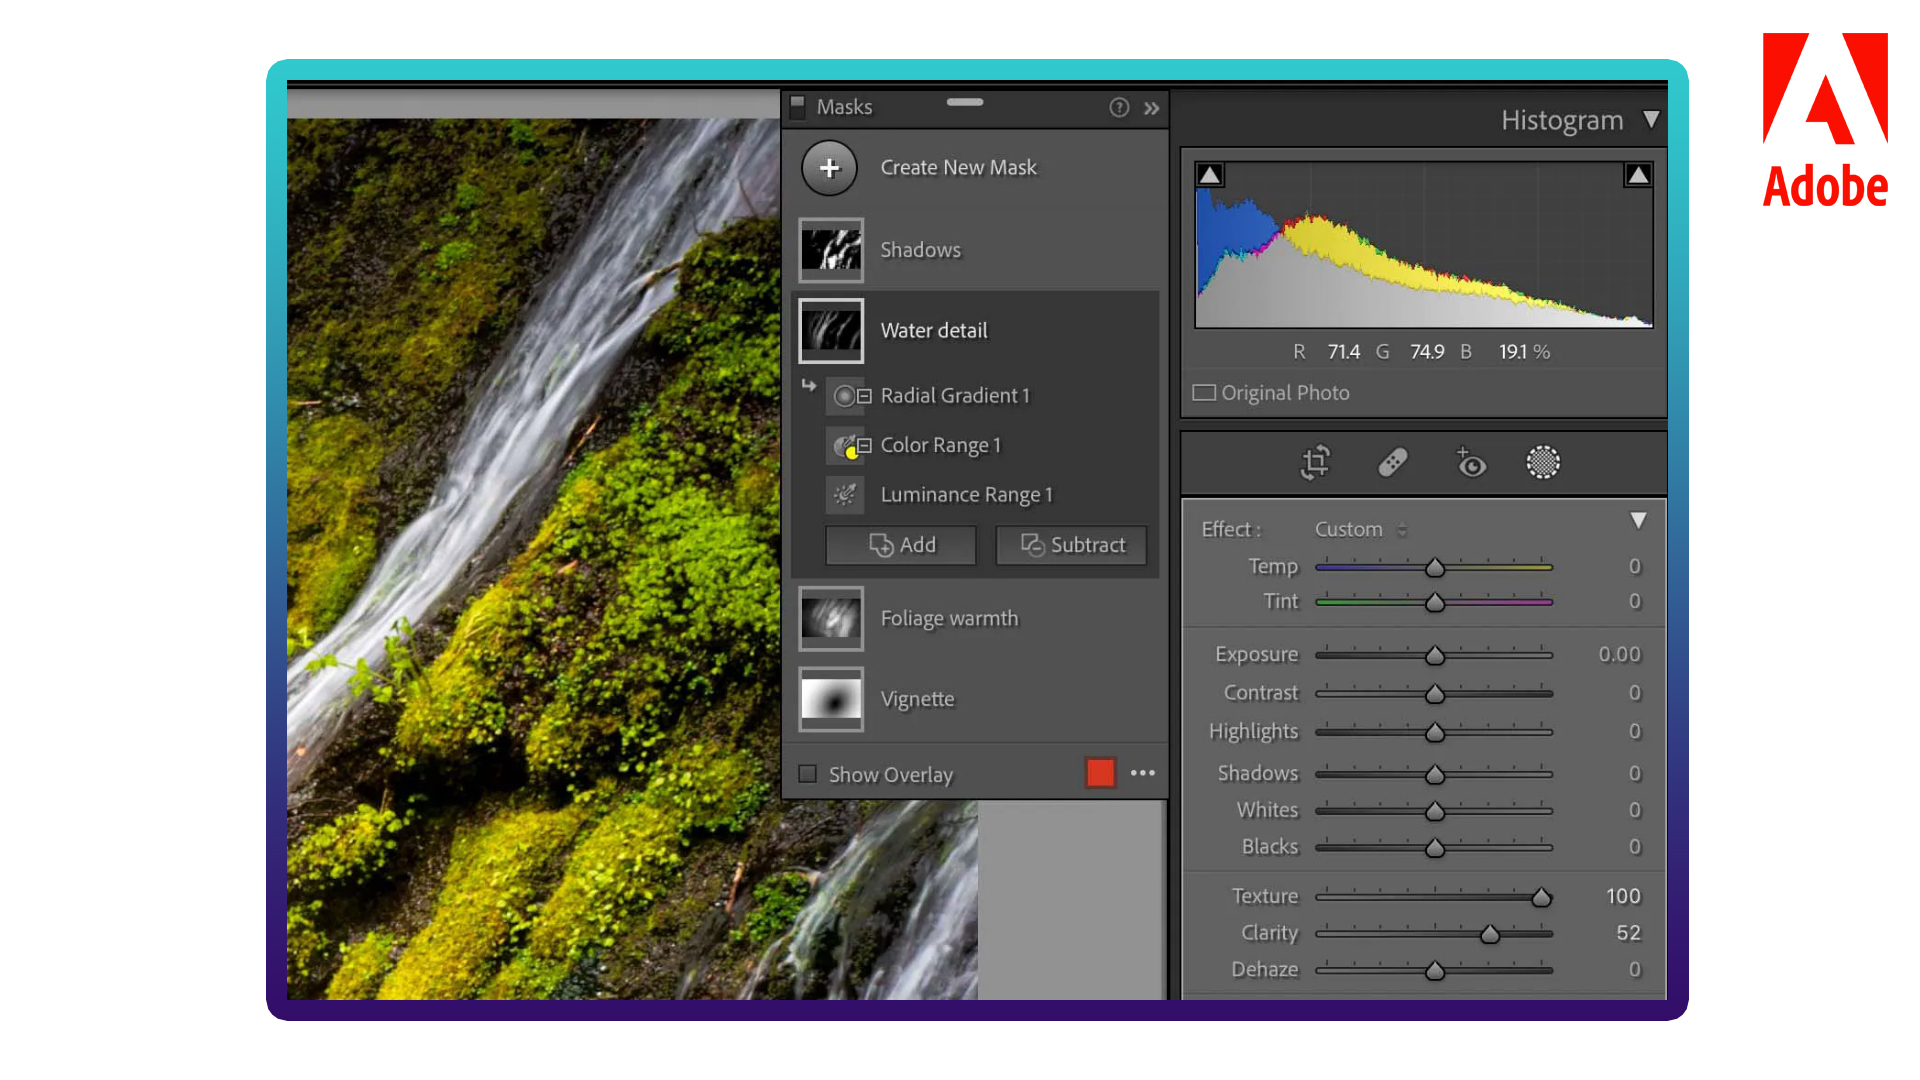 Adobe Camera Raw เพิ่มความสามารถเลือกแต่งภาพเฉพาะส่วนในฟีเจอร์ Masking